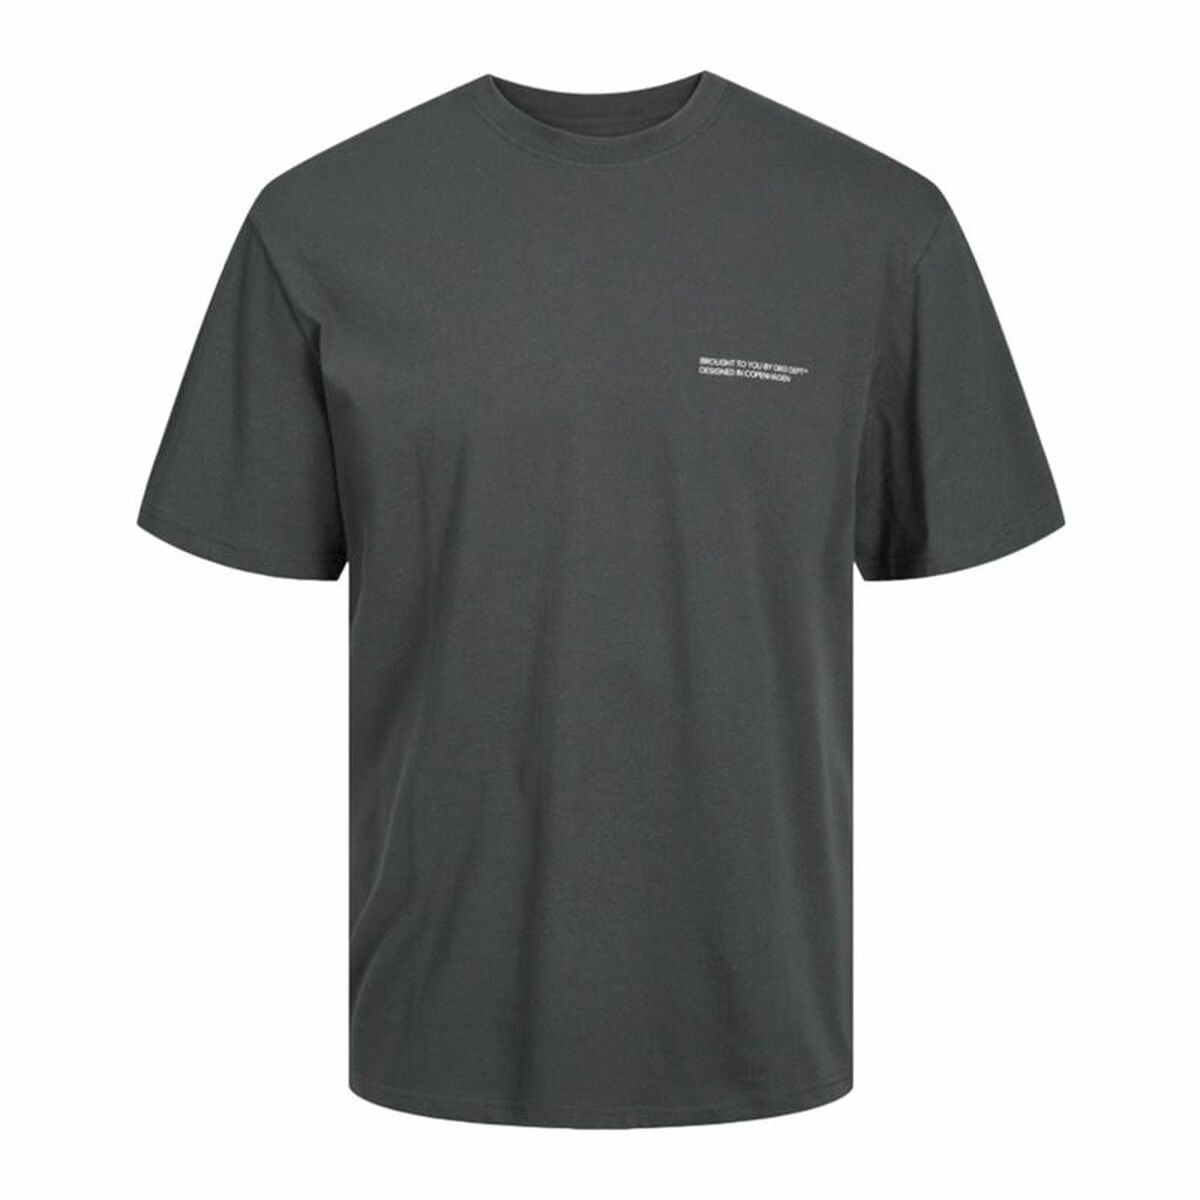 Osta tuote Miesten T-paita Jack & Jones Jorvesterbro Tumman harmaa (Koko: 2XL) verkkokaupastamme Korhone: Urheilu & Vapaa-aika 20% alennuksella koodilla VIIKONLOPPU